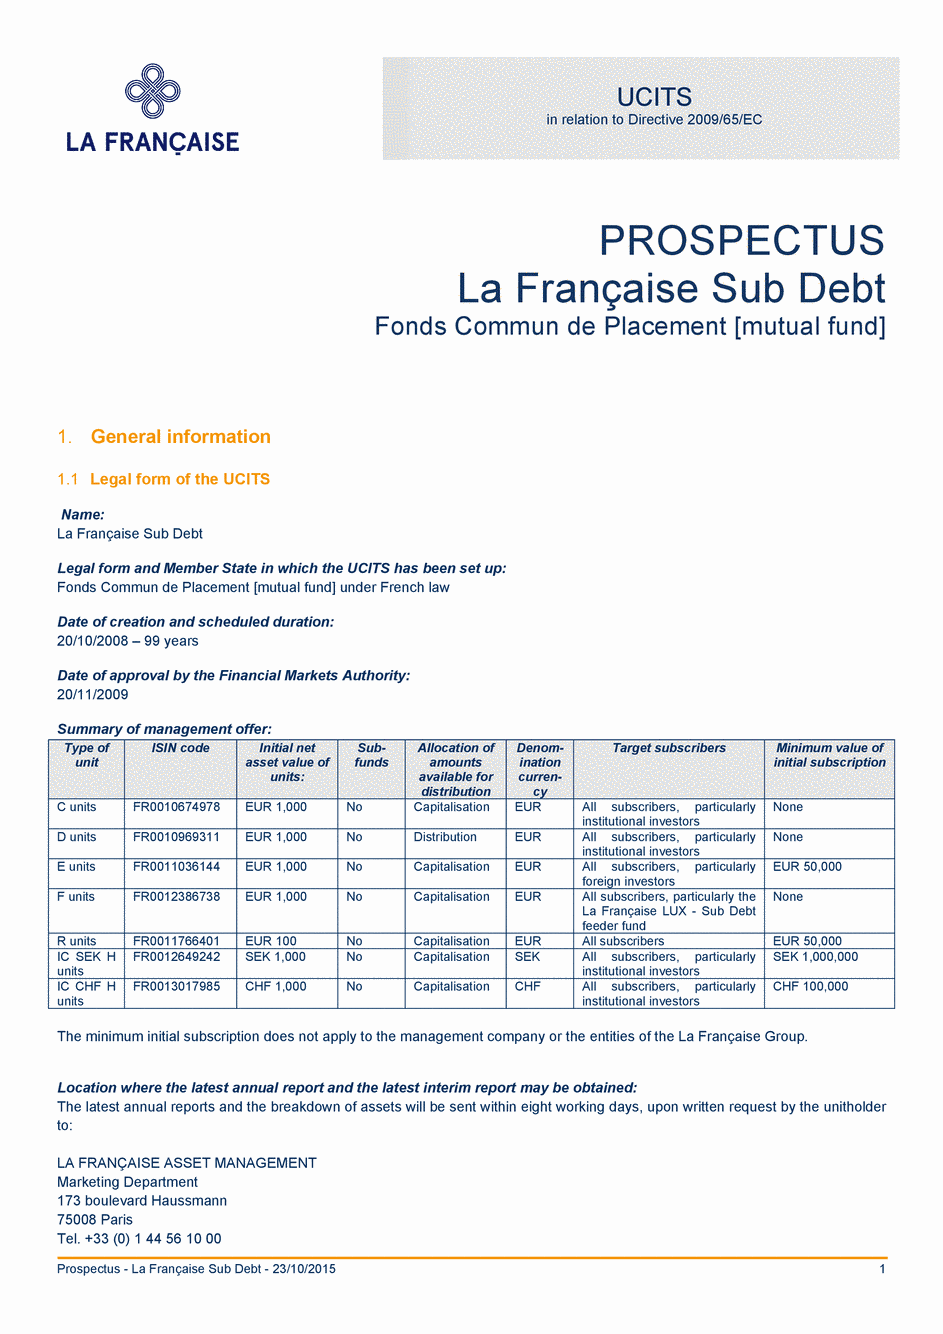 Prospectus La Française Sub Debt - Part R - 23/10/2015 - Anglais